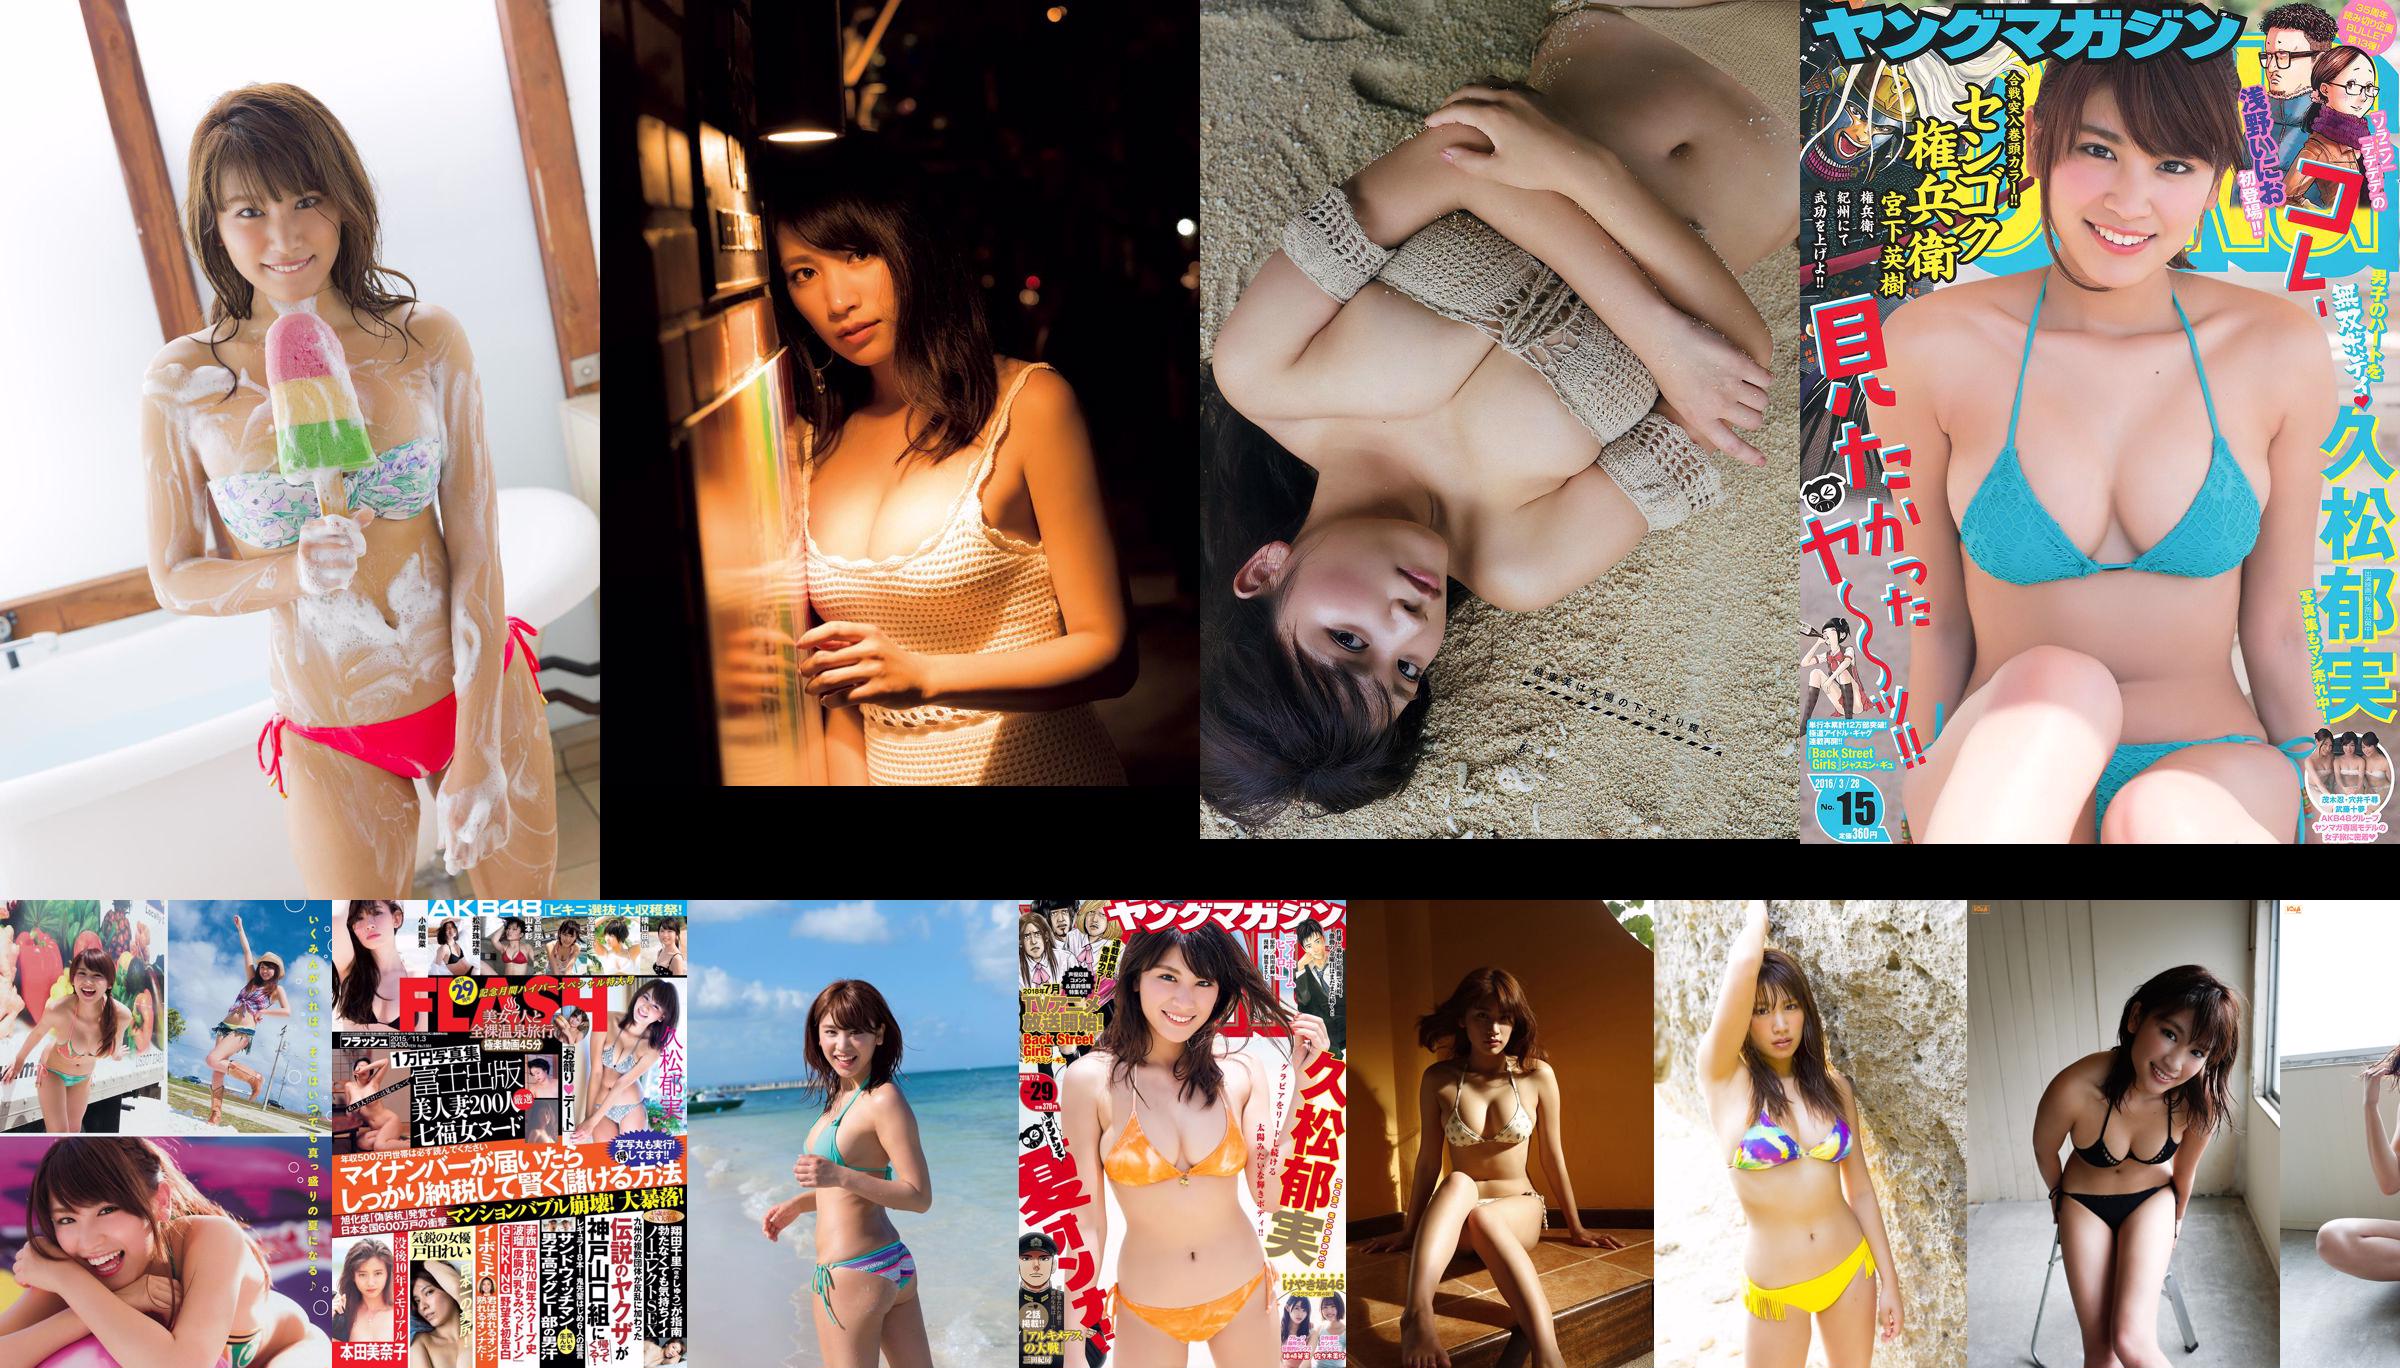 [FLASH] Ikumi Hisamatsu Rei Toda Minako Honda 2015.11.03 Fotografia No.b5886d Pagina 10